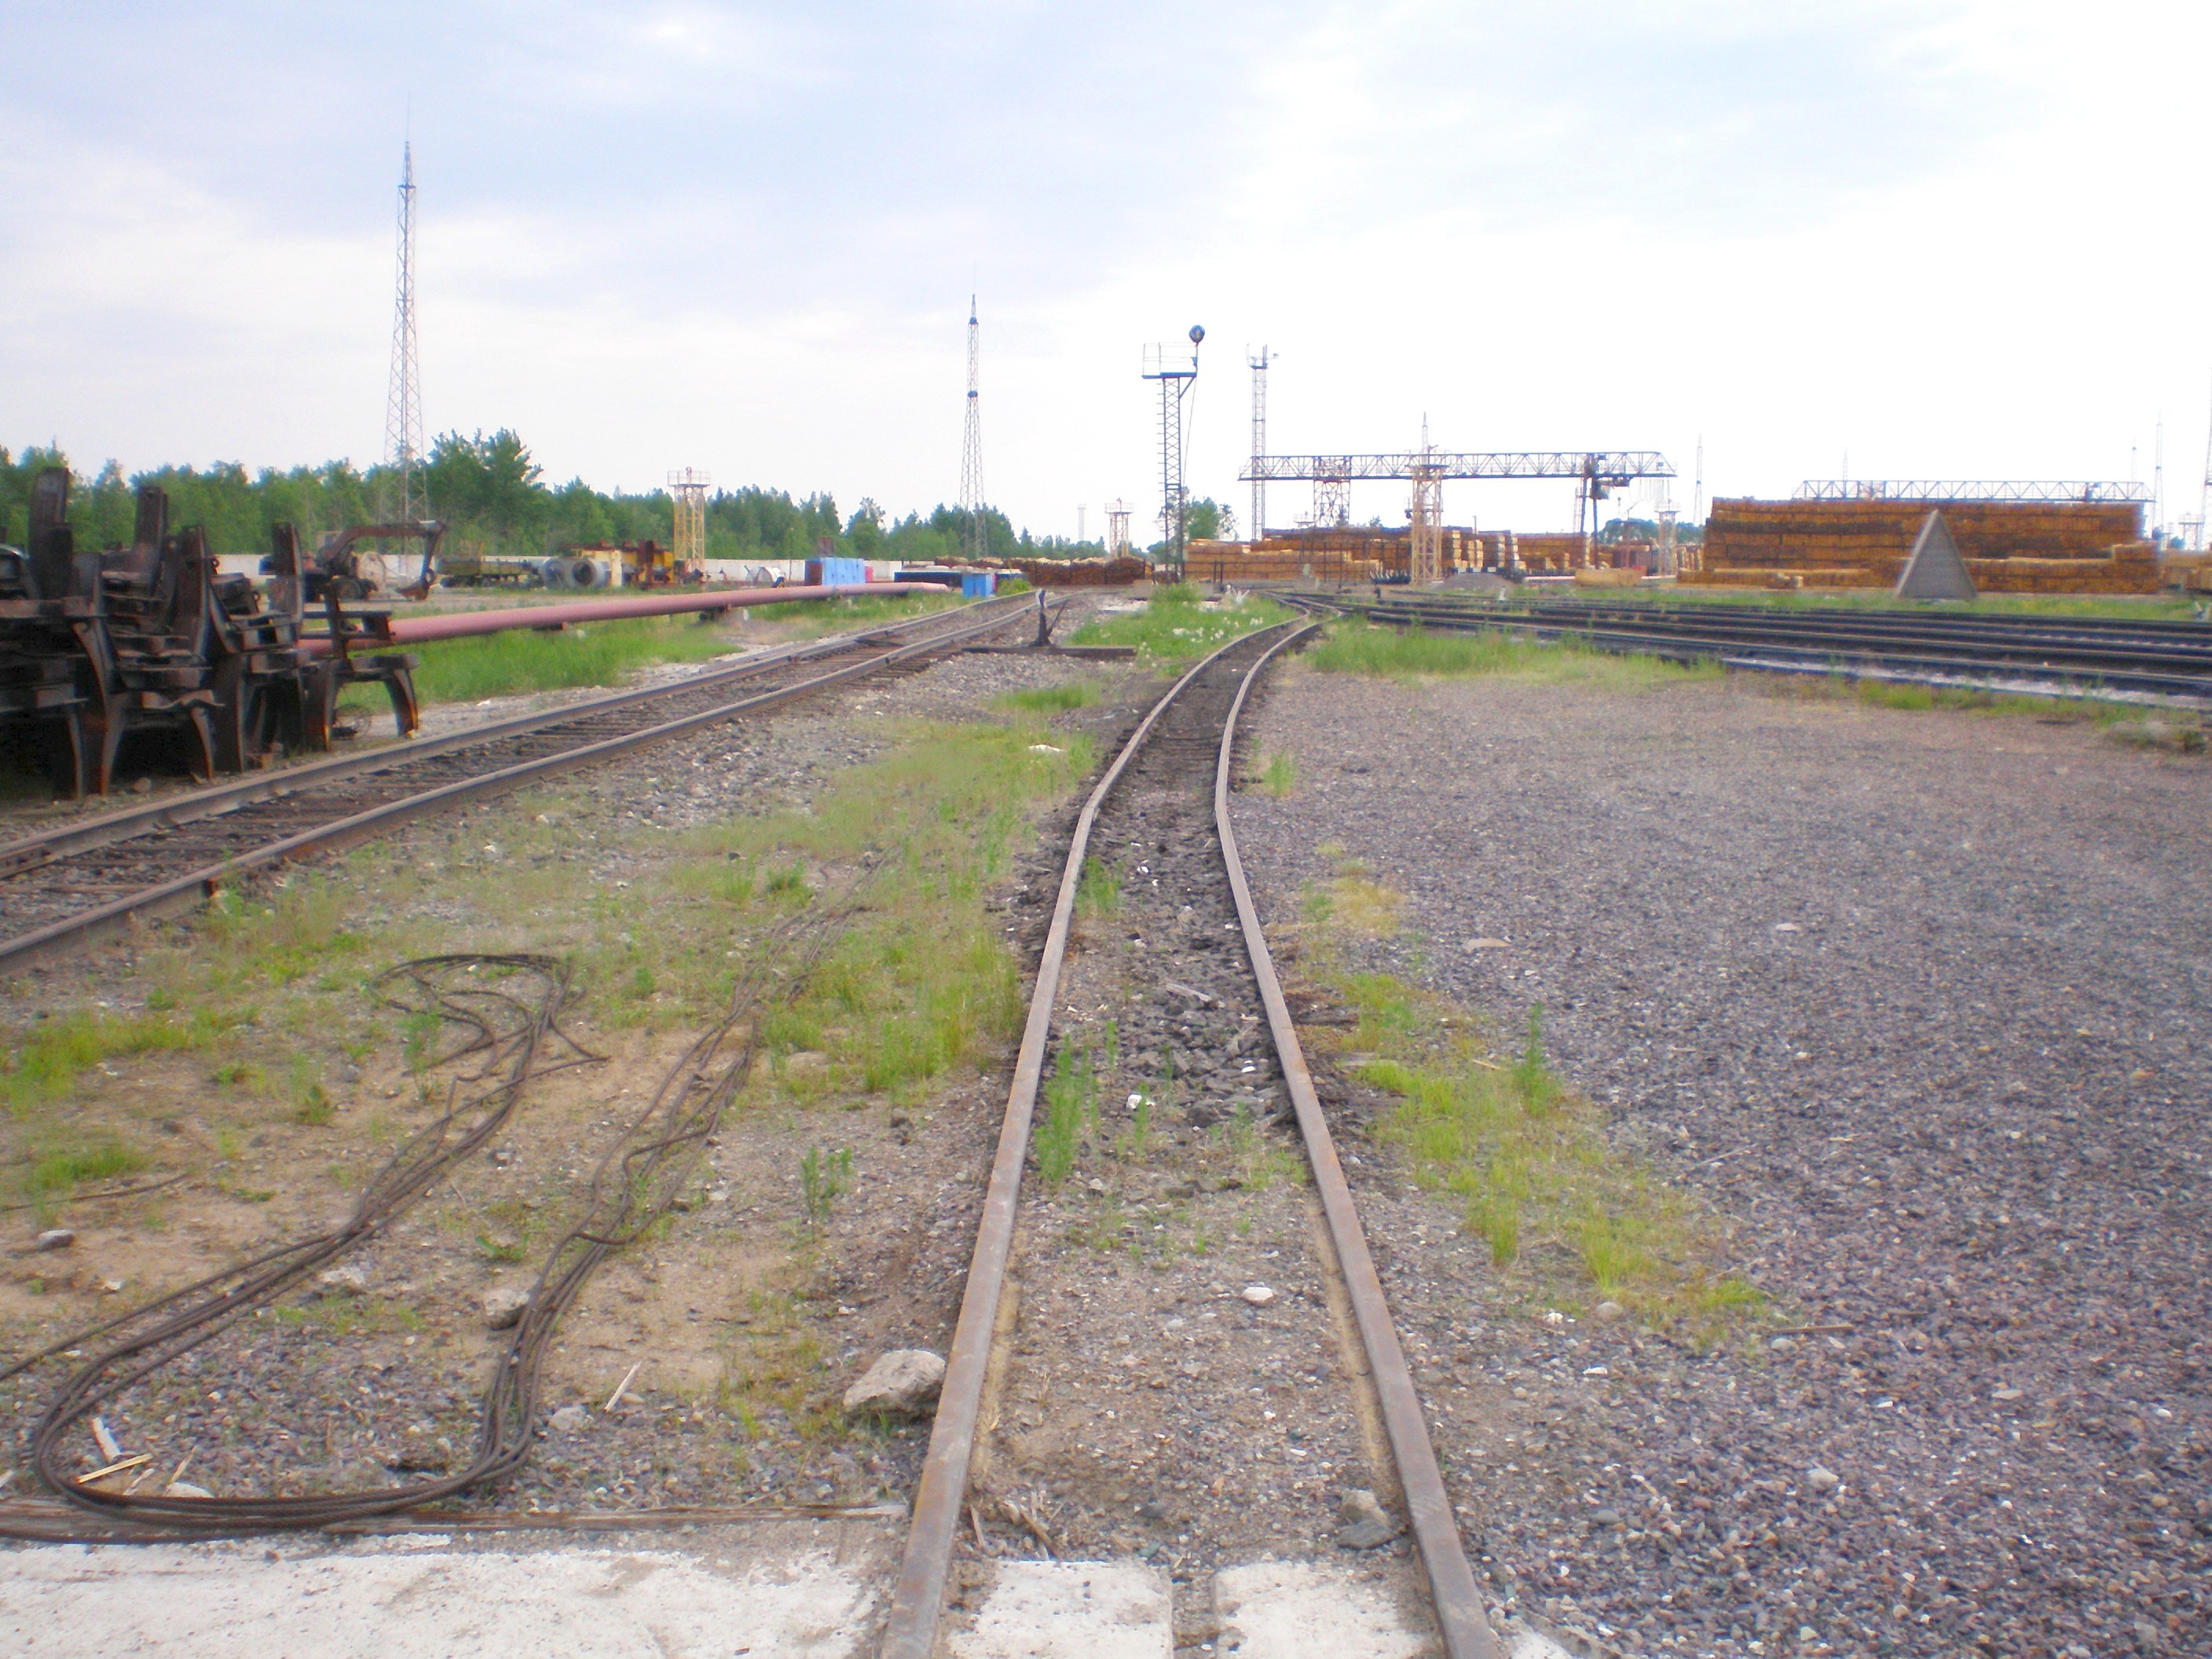 Узкоколейная железная дорога Аурского шпалопропиточного завода  — фотографии, сделанные в 2008 году (часть 1)